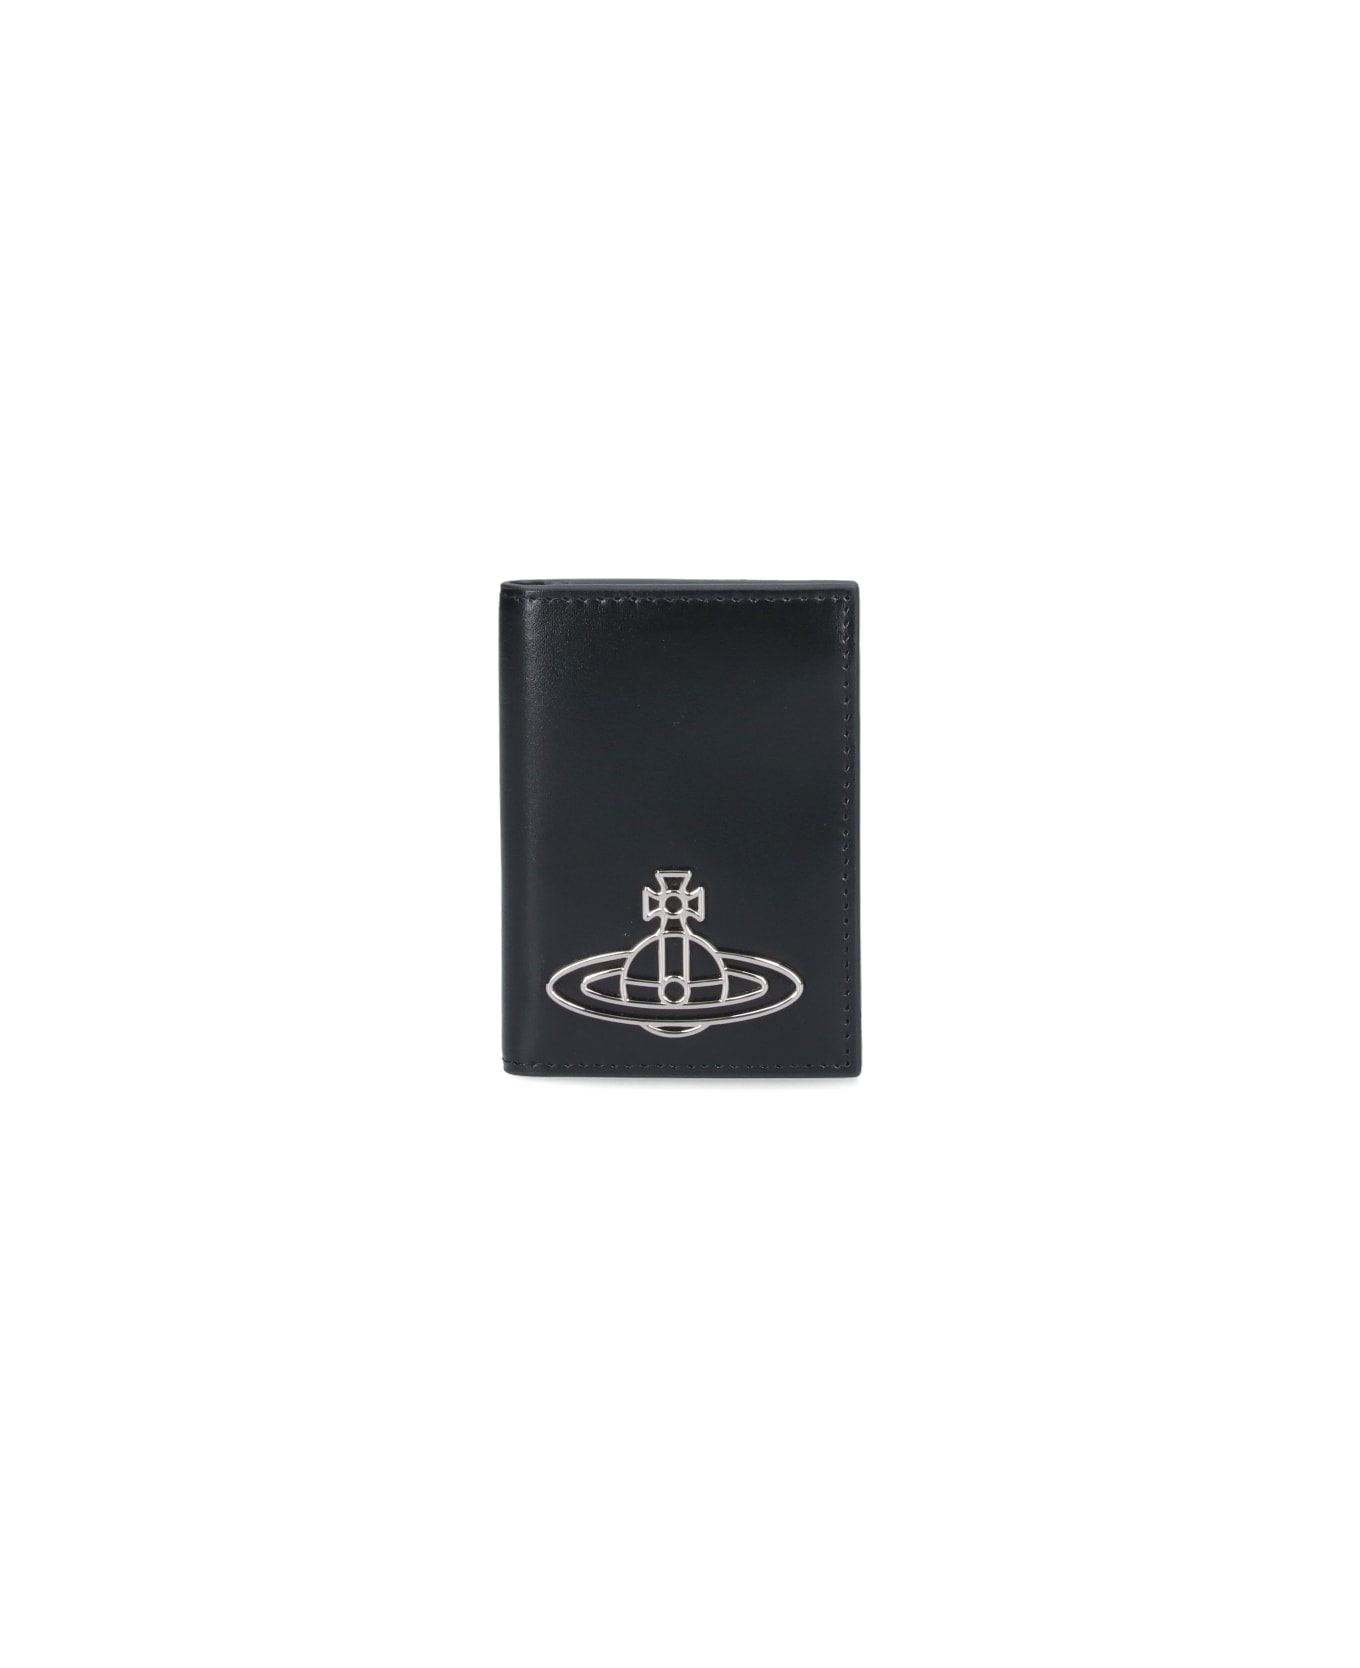 Vivienne Westwood Logo Card Holder - Black  